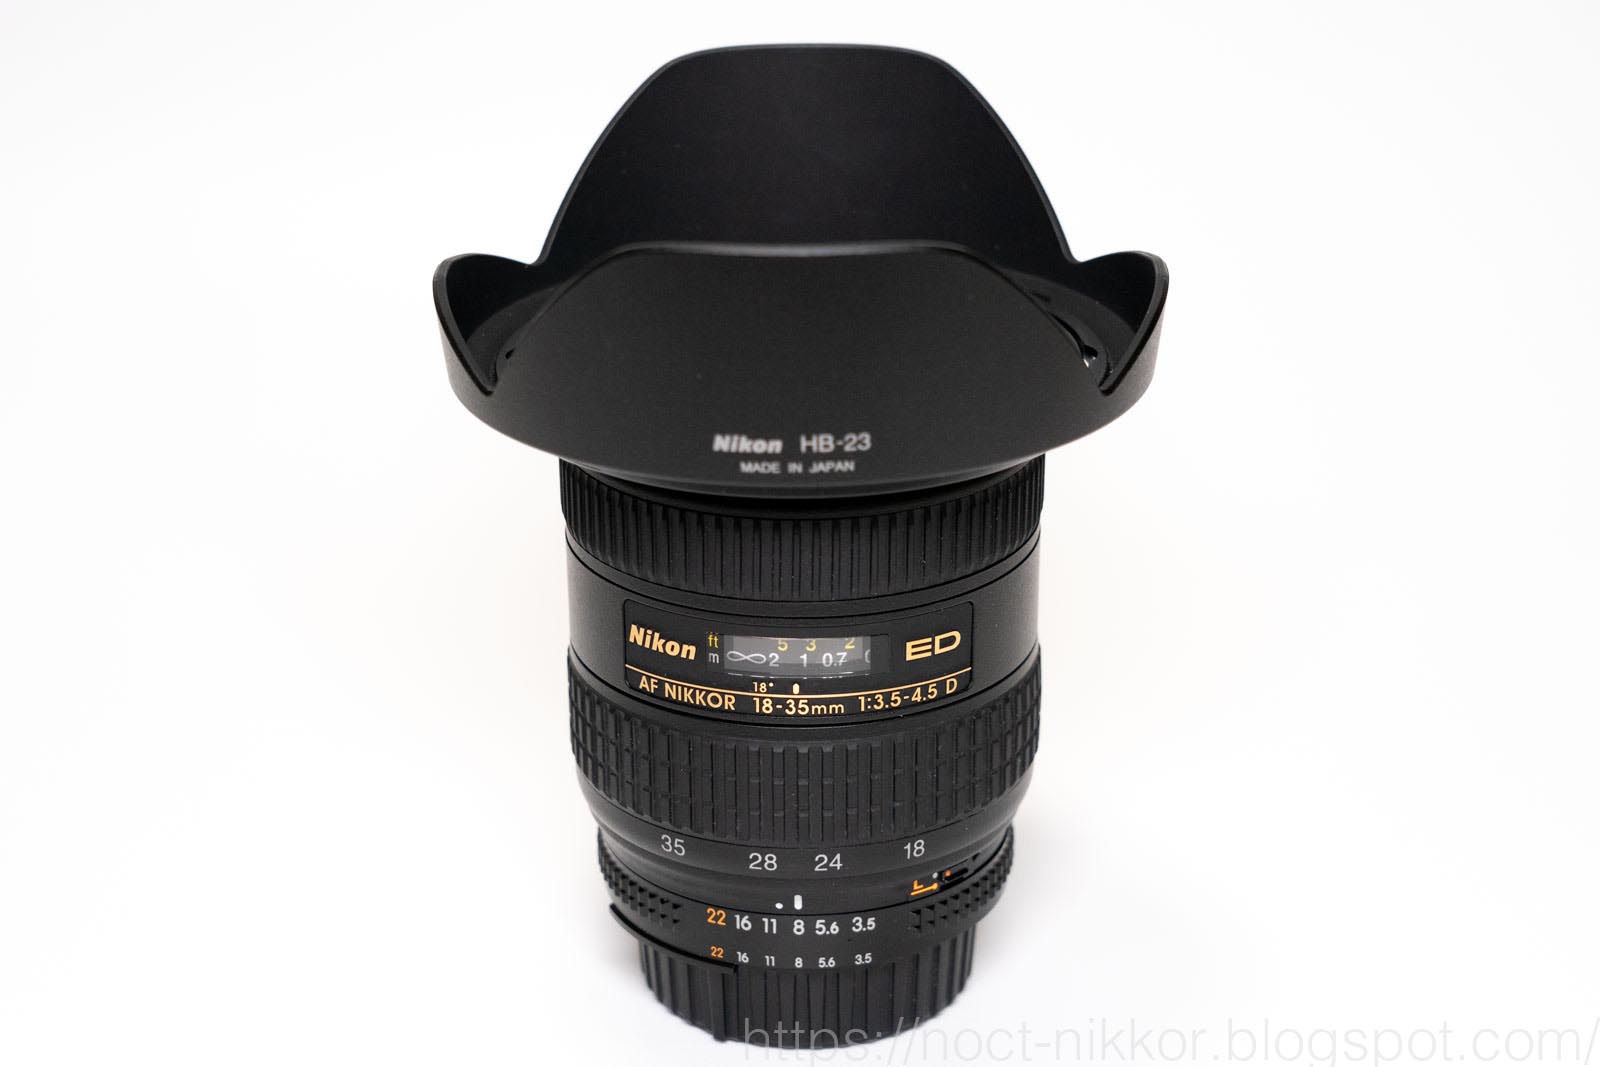 Nikon AF NIKKOR 18-35mm 3.5-4.5D ED